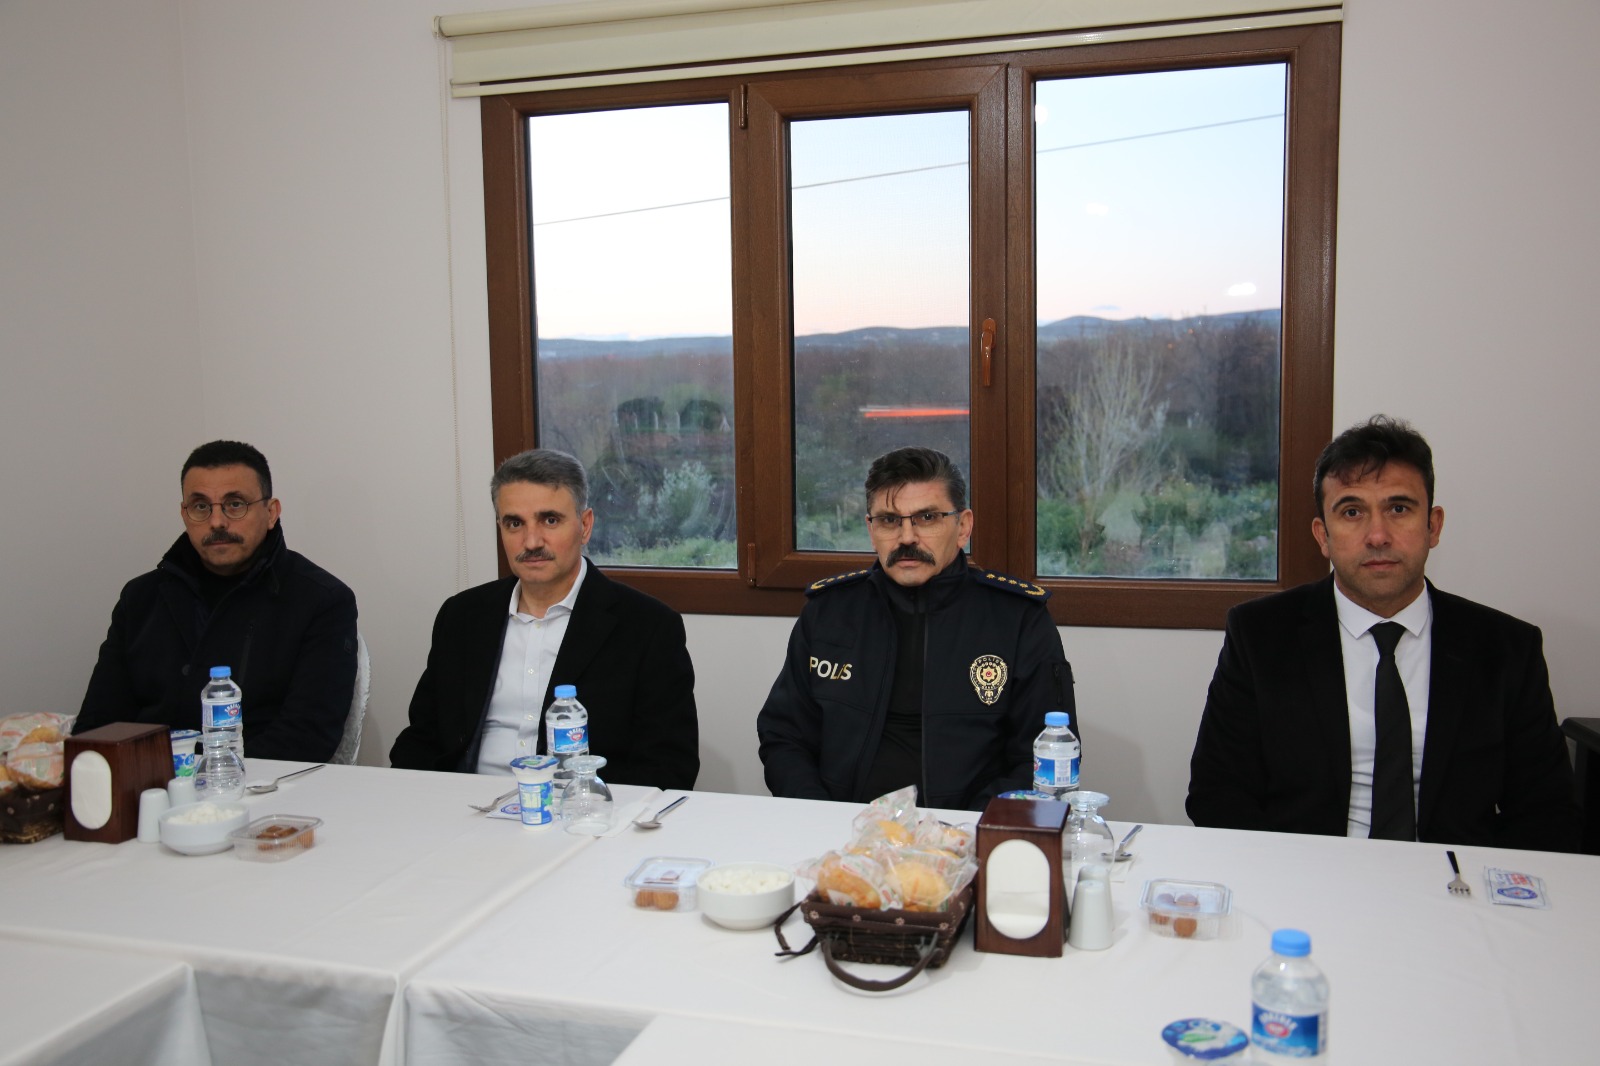 Malatya-Elazığ Karayolu üzerinde bulunan polis kontrol noktasında görev yapan polisler, iftarlarını gelen misafirleri ile birlikte açtılar.